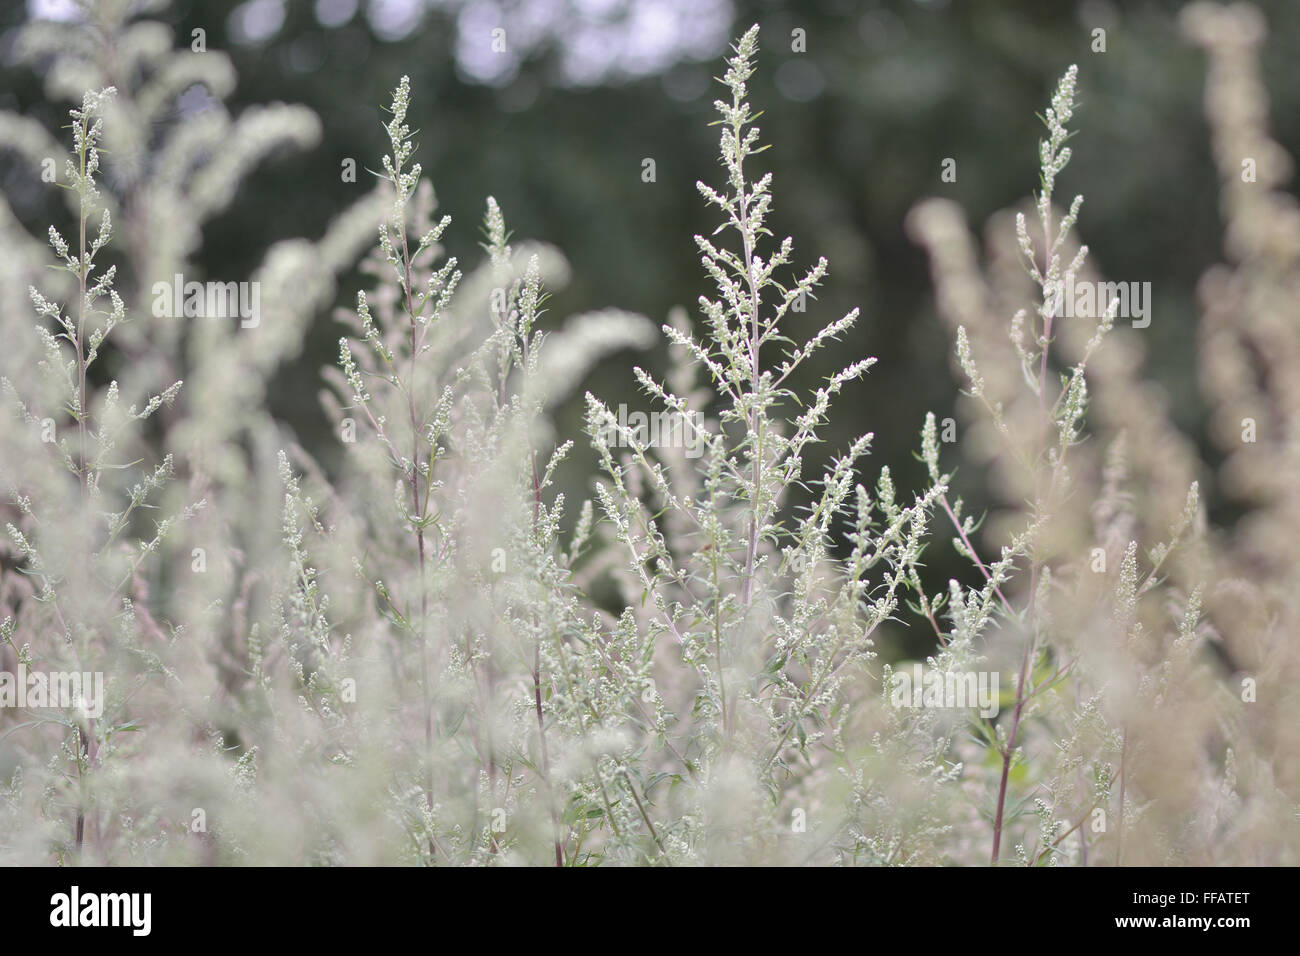 Beifuß (Artemisia Vulgaris) in Blüte. Eine häufige Pflanze rund ums Wasser  in Großbritannien, diese hohen Pflanzen bilden ein dichtes Büschel  Stockfotografie - Alamy